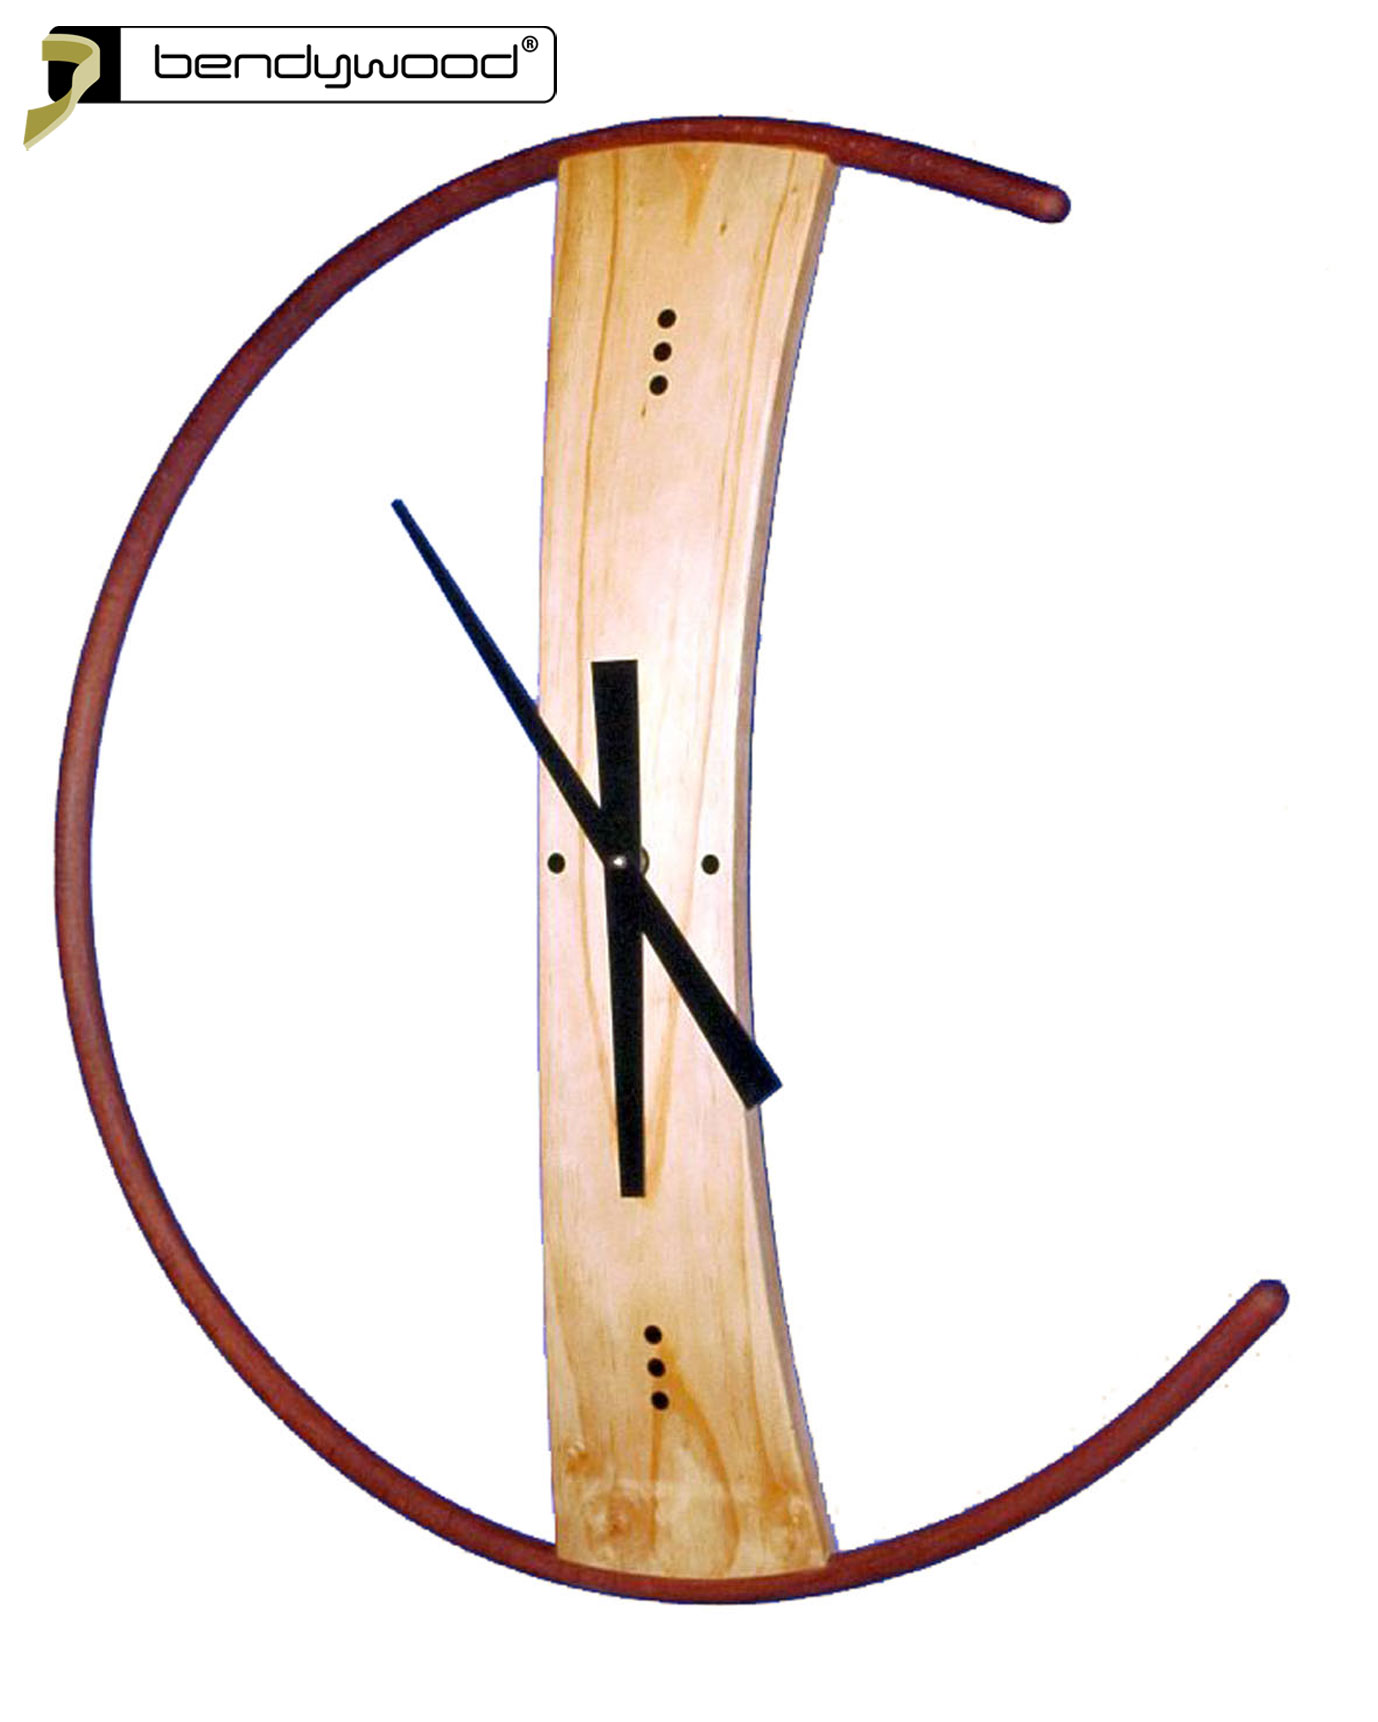 Reloj de pared en madera Bendywood®